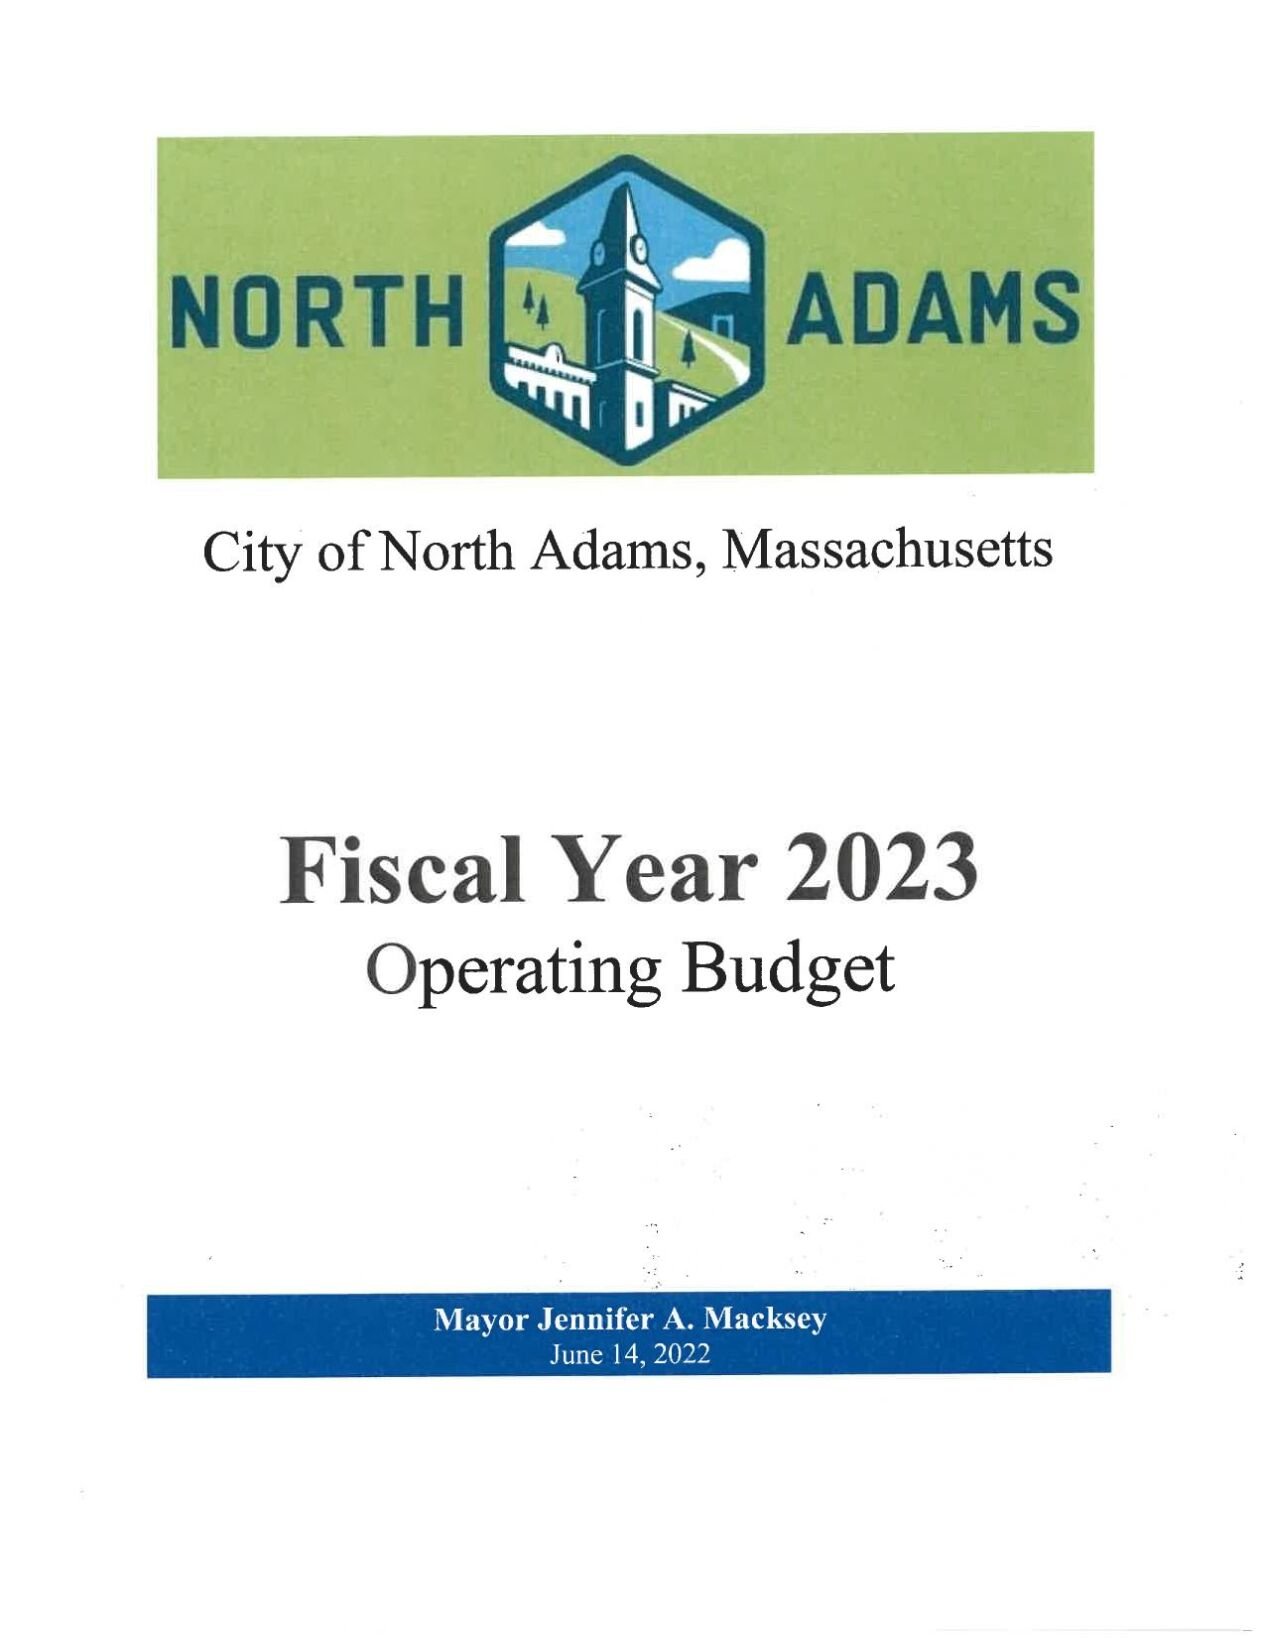 Mayor Macksey's proposed budget